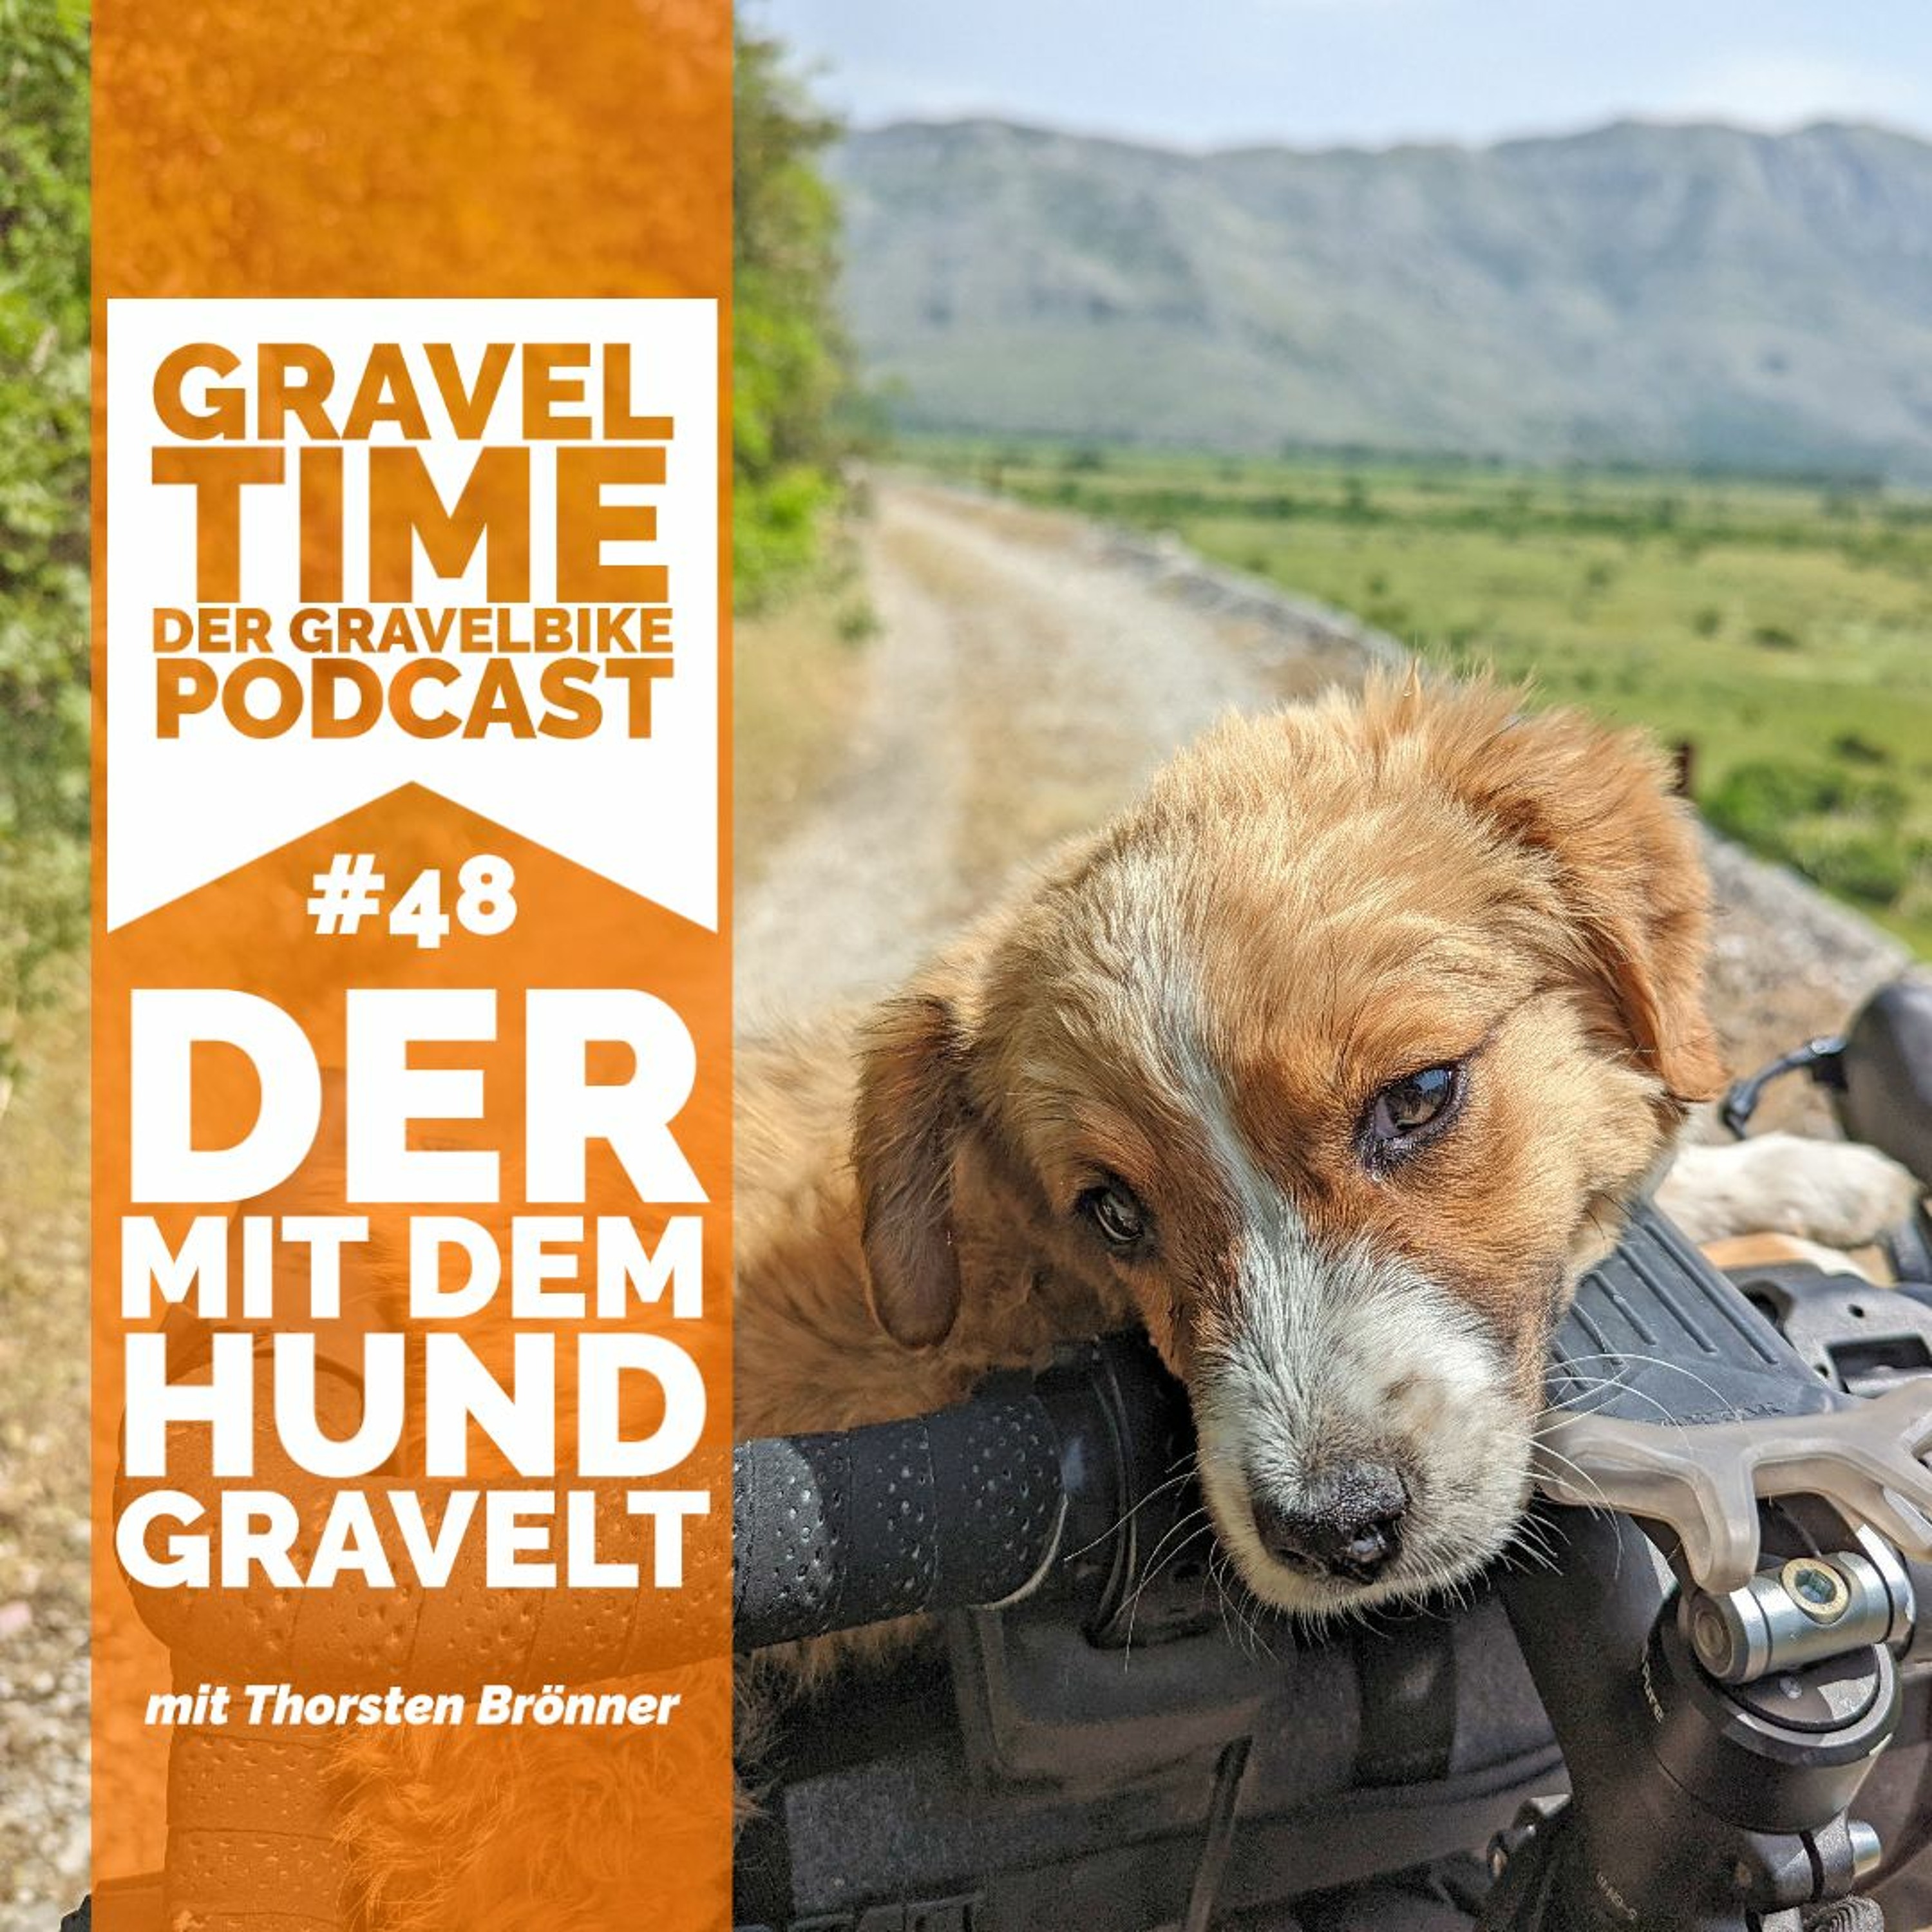 GravelTIME #48 Der mit dem Hund gravelt | mit Thorsten Brönner